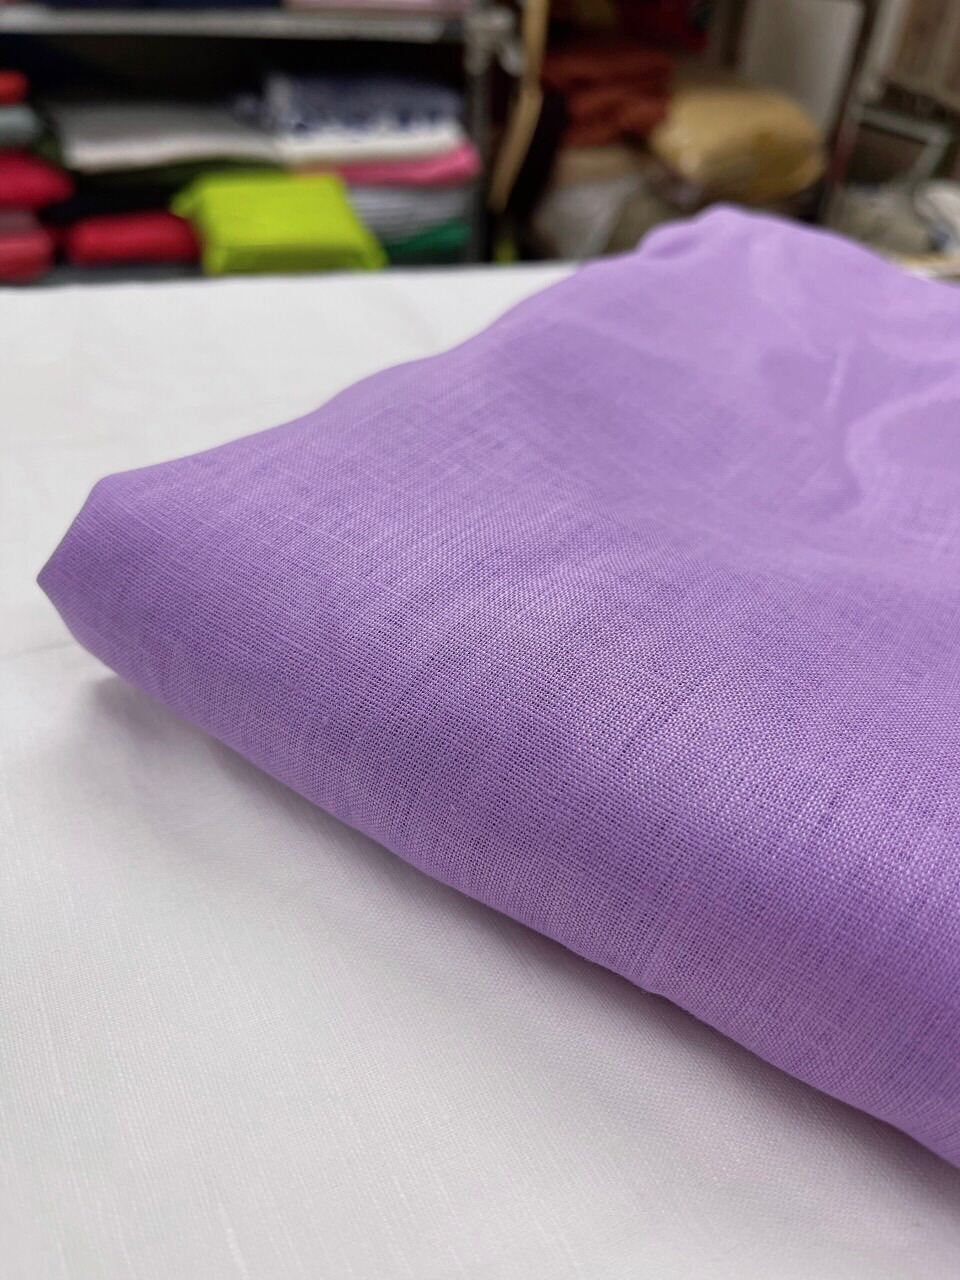 [HCM] Vải Linen Tưng Premium Nhiều màu sang xịn mịn - khổ 1m40 (1mx1m40) may đầm set bộ ko cần lót